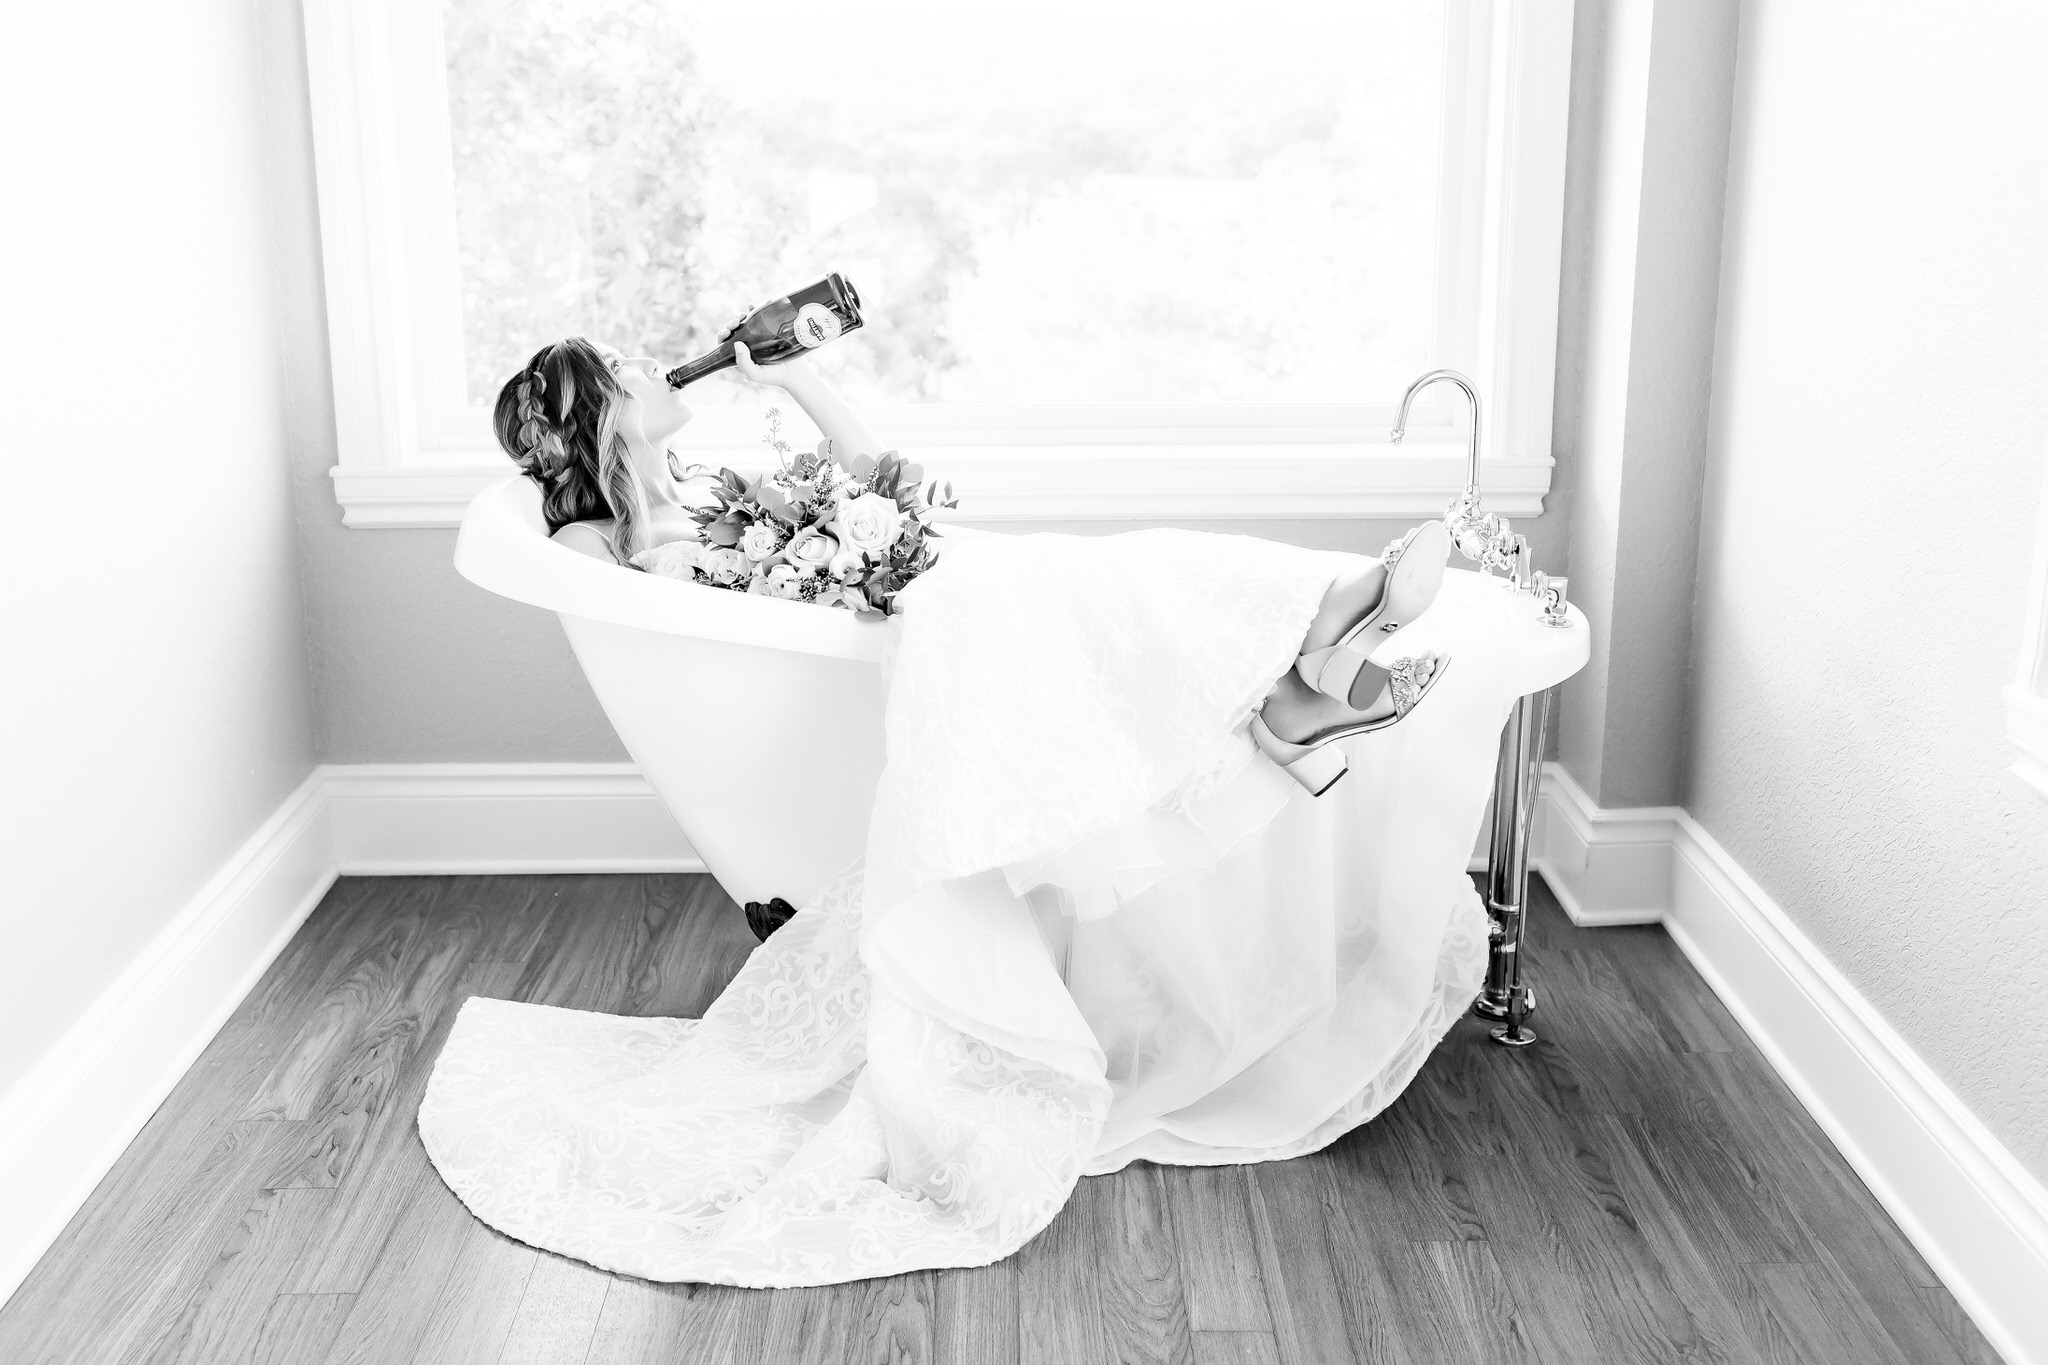 A Bridal Session at Kendall Point in Boerne, TX by Dawn Elizabeth Studios, San Antonio Wedding Photographer